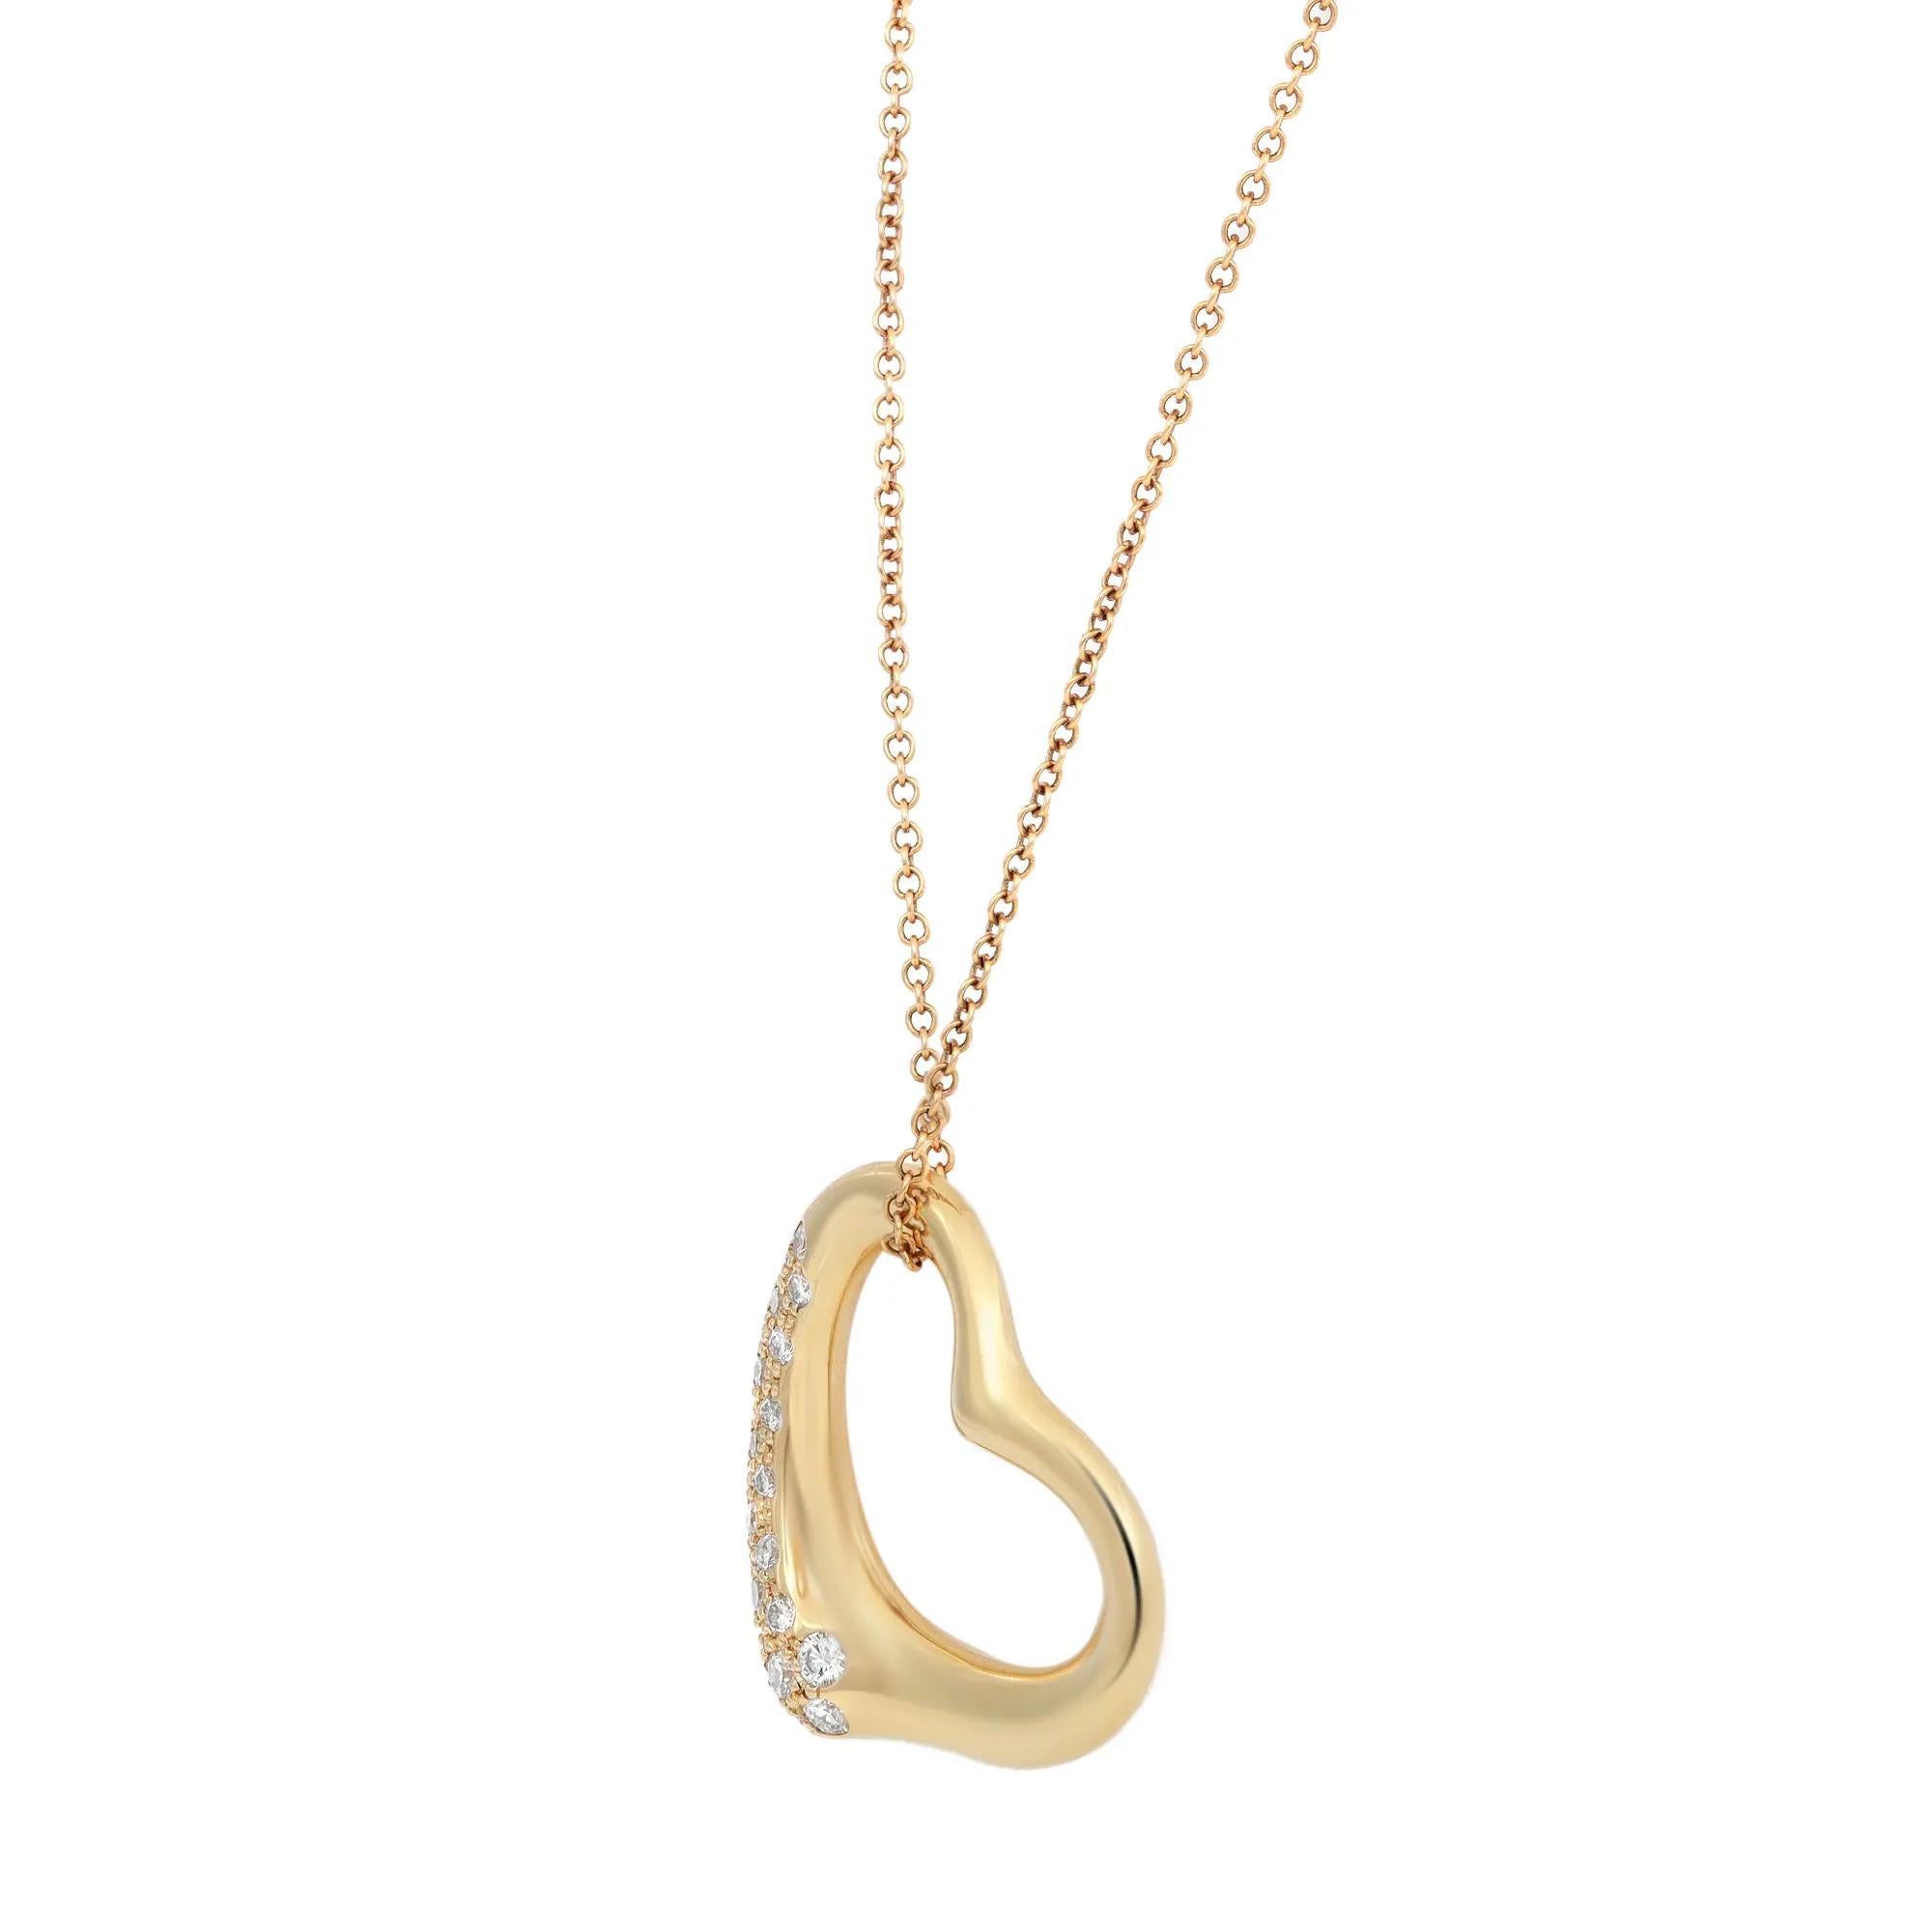 Taille ronde Tiffany & Co. Elsa Peretti Pendentif cœur ouvert en or jaune 18 carats avec diamants 0,33 carat